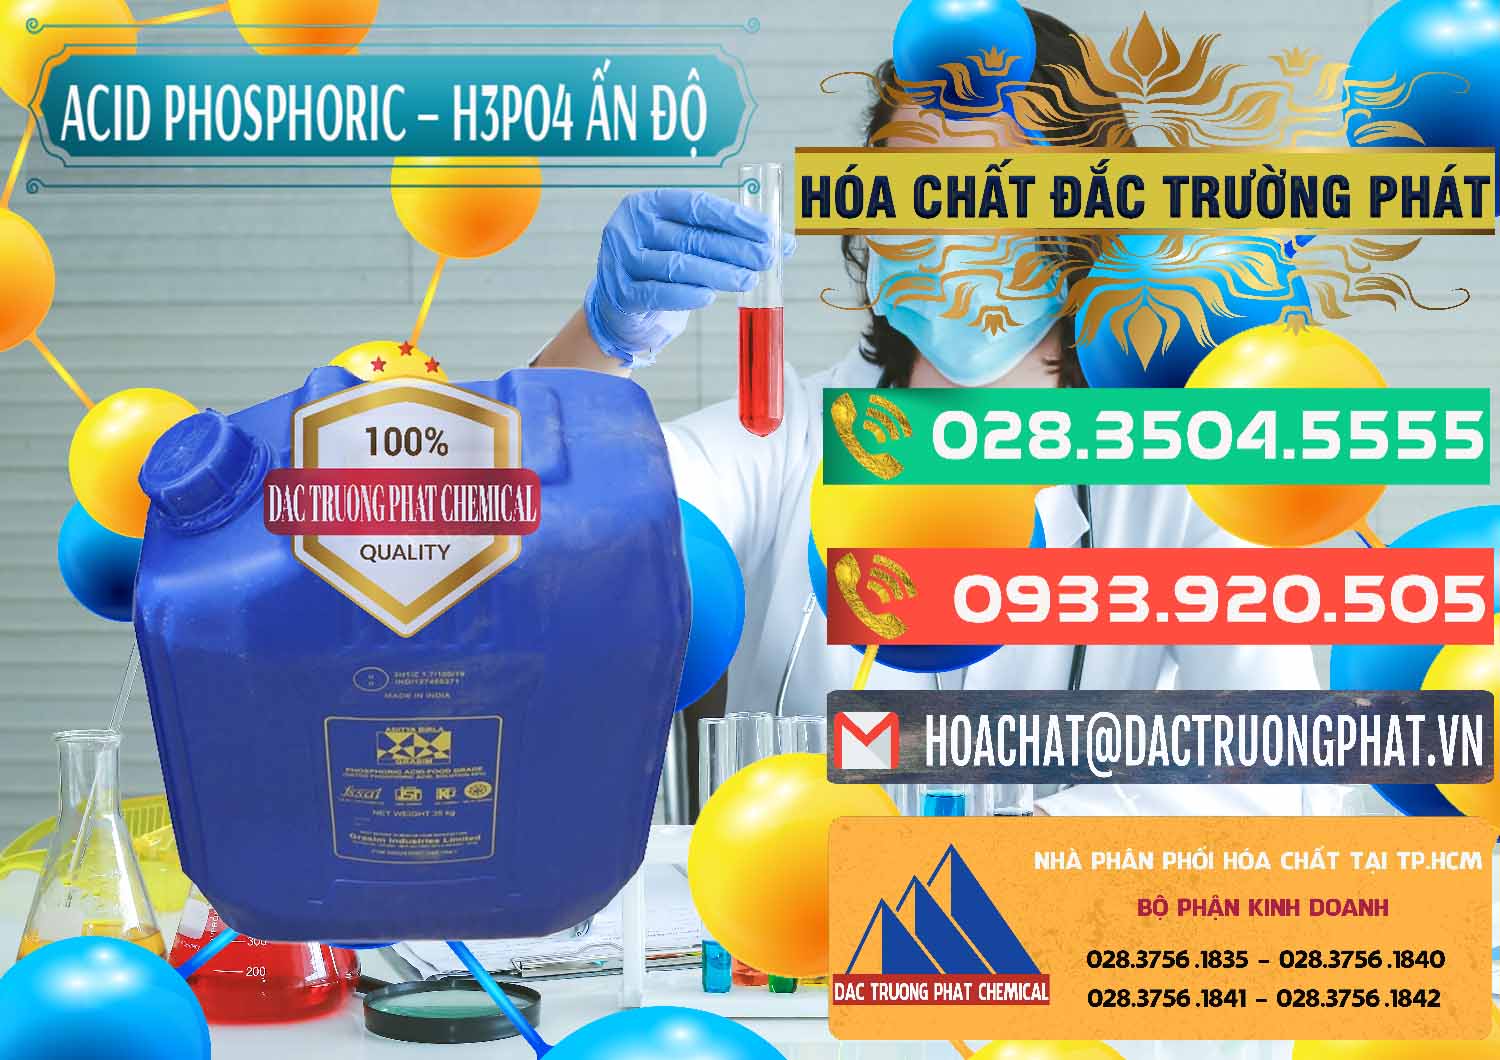 Chuyên kinh doanh _ bán Axit Phosphoric H3PO4 85% Ấn Độ - 0350 - Nơi cung cấp & kinh doanh hóa chất tại TP.HCM - congtyhoachat.com.vn